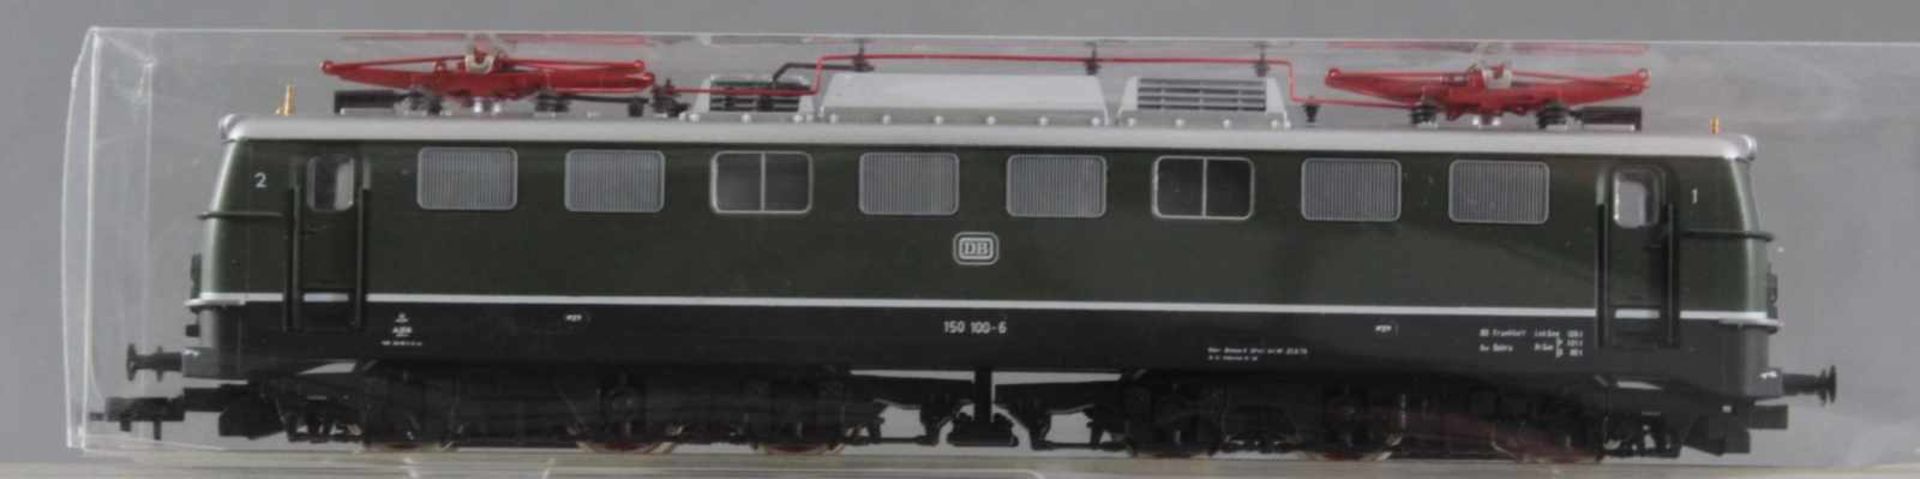 Roco H0 E-Lok 150 100-6 mit 6 Fleischmann GüterwaggonsModellnummer der Waggons 5366, 5215, 85 - Image 2 of 2